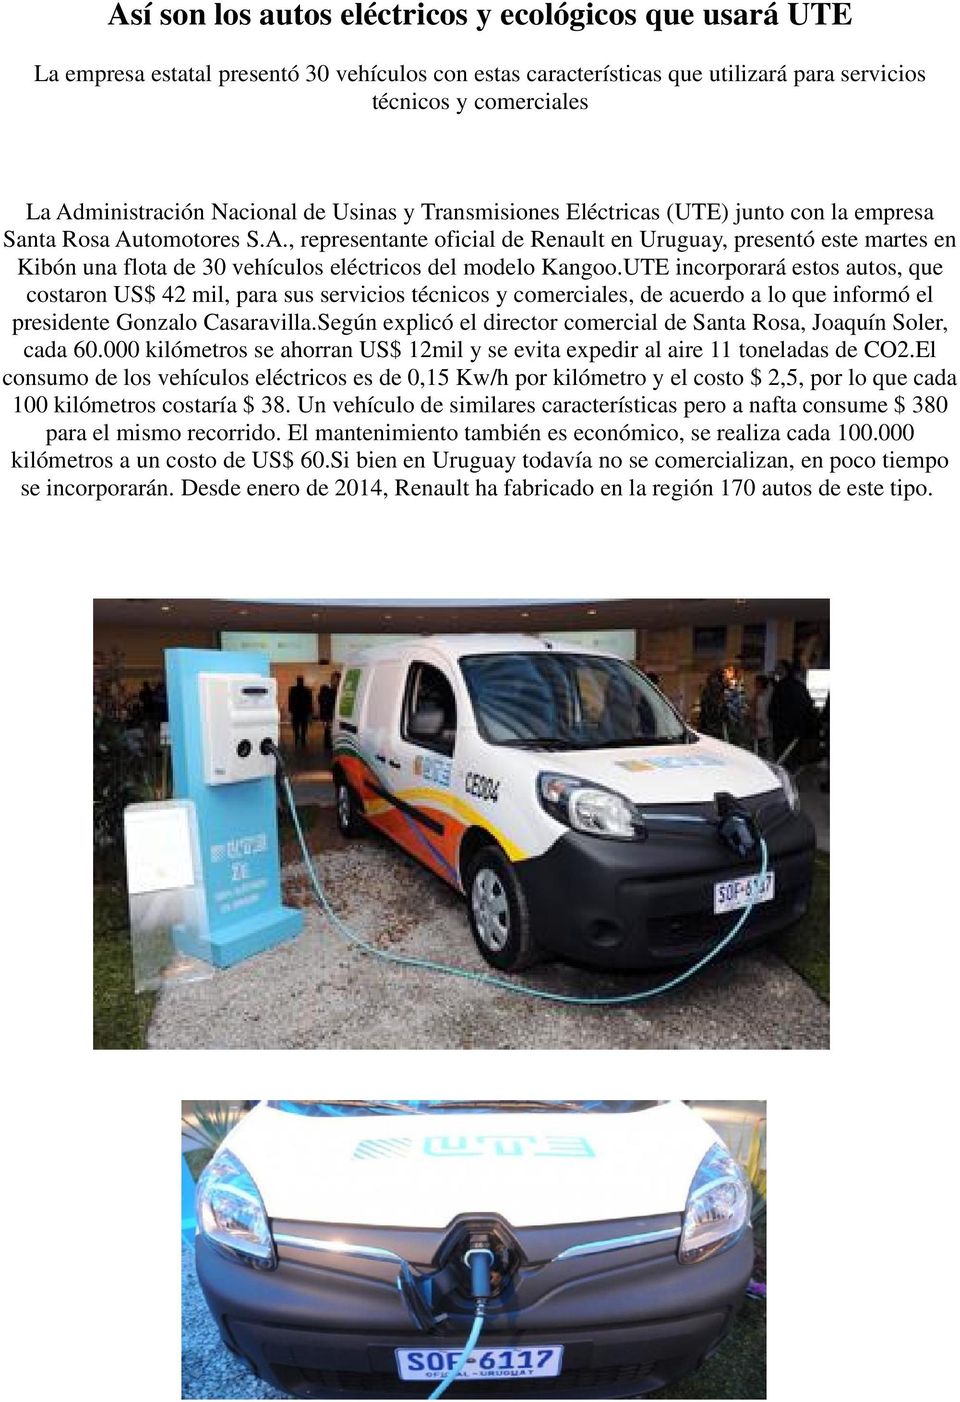 tomotores S.A., representante oficial de Renault en Uruguay, presentó este martes en Kibón una flota de 30 vehículos eléctricos del modelo Kangoo.